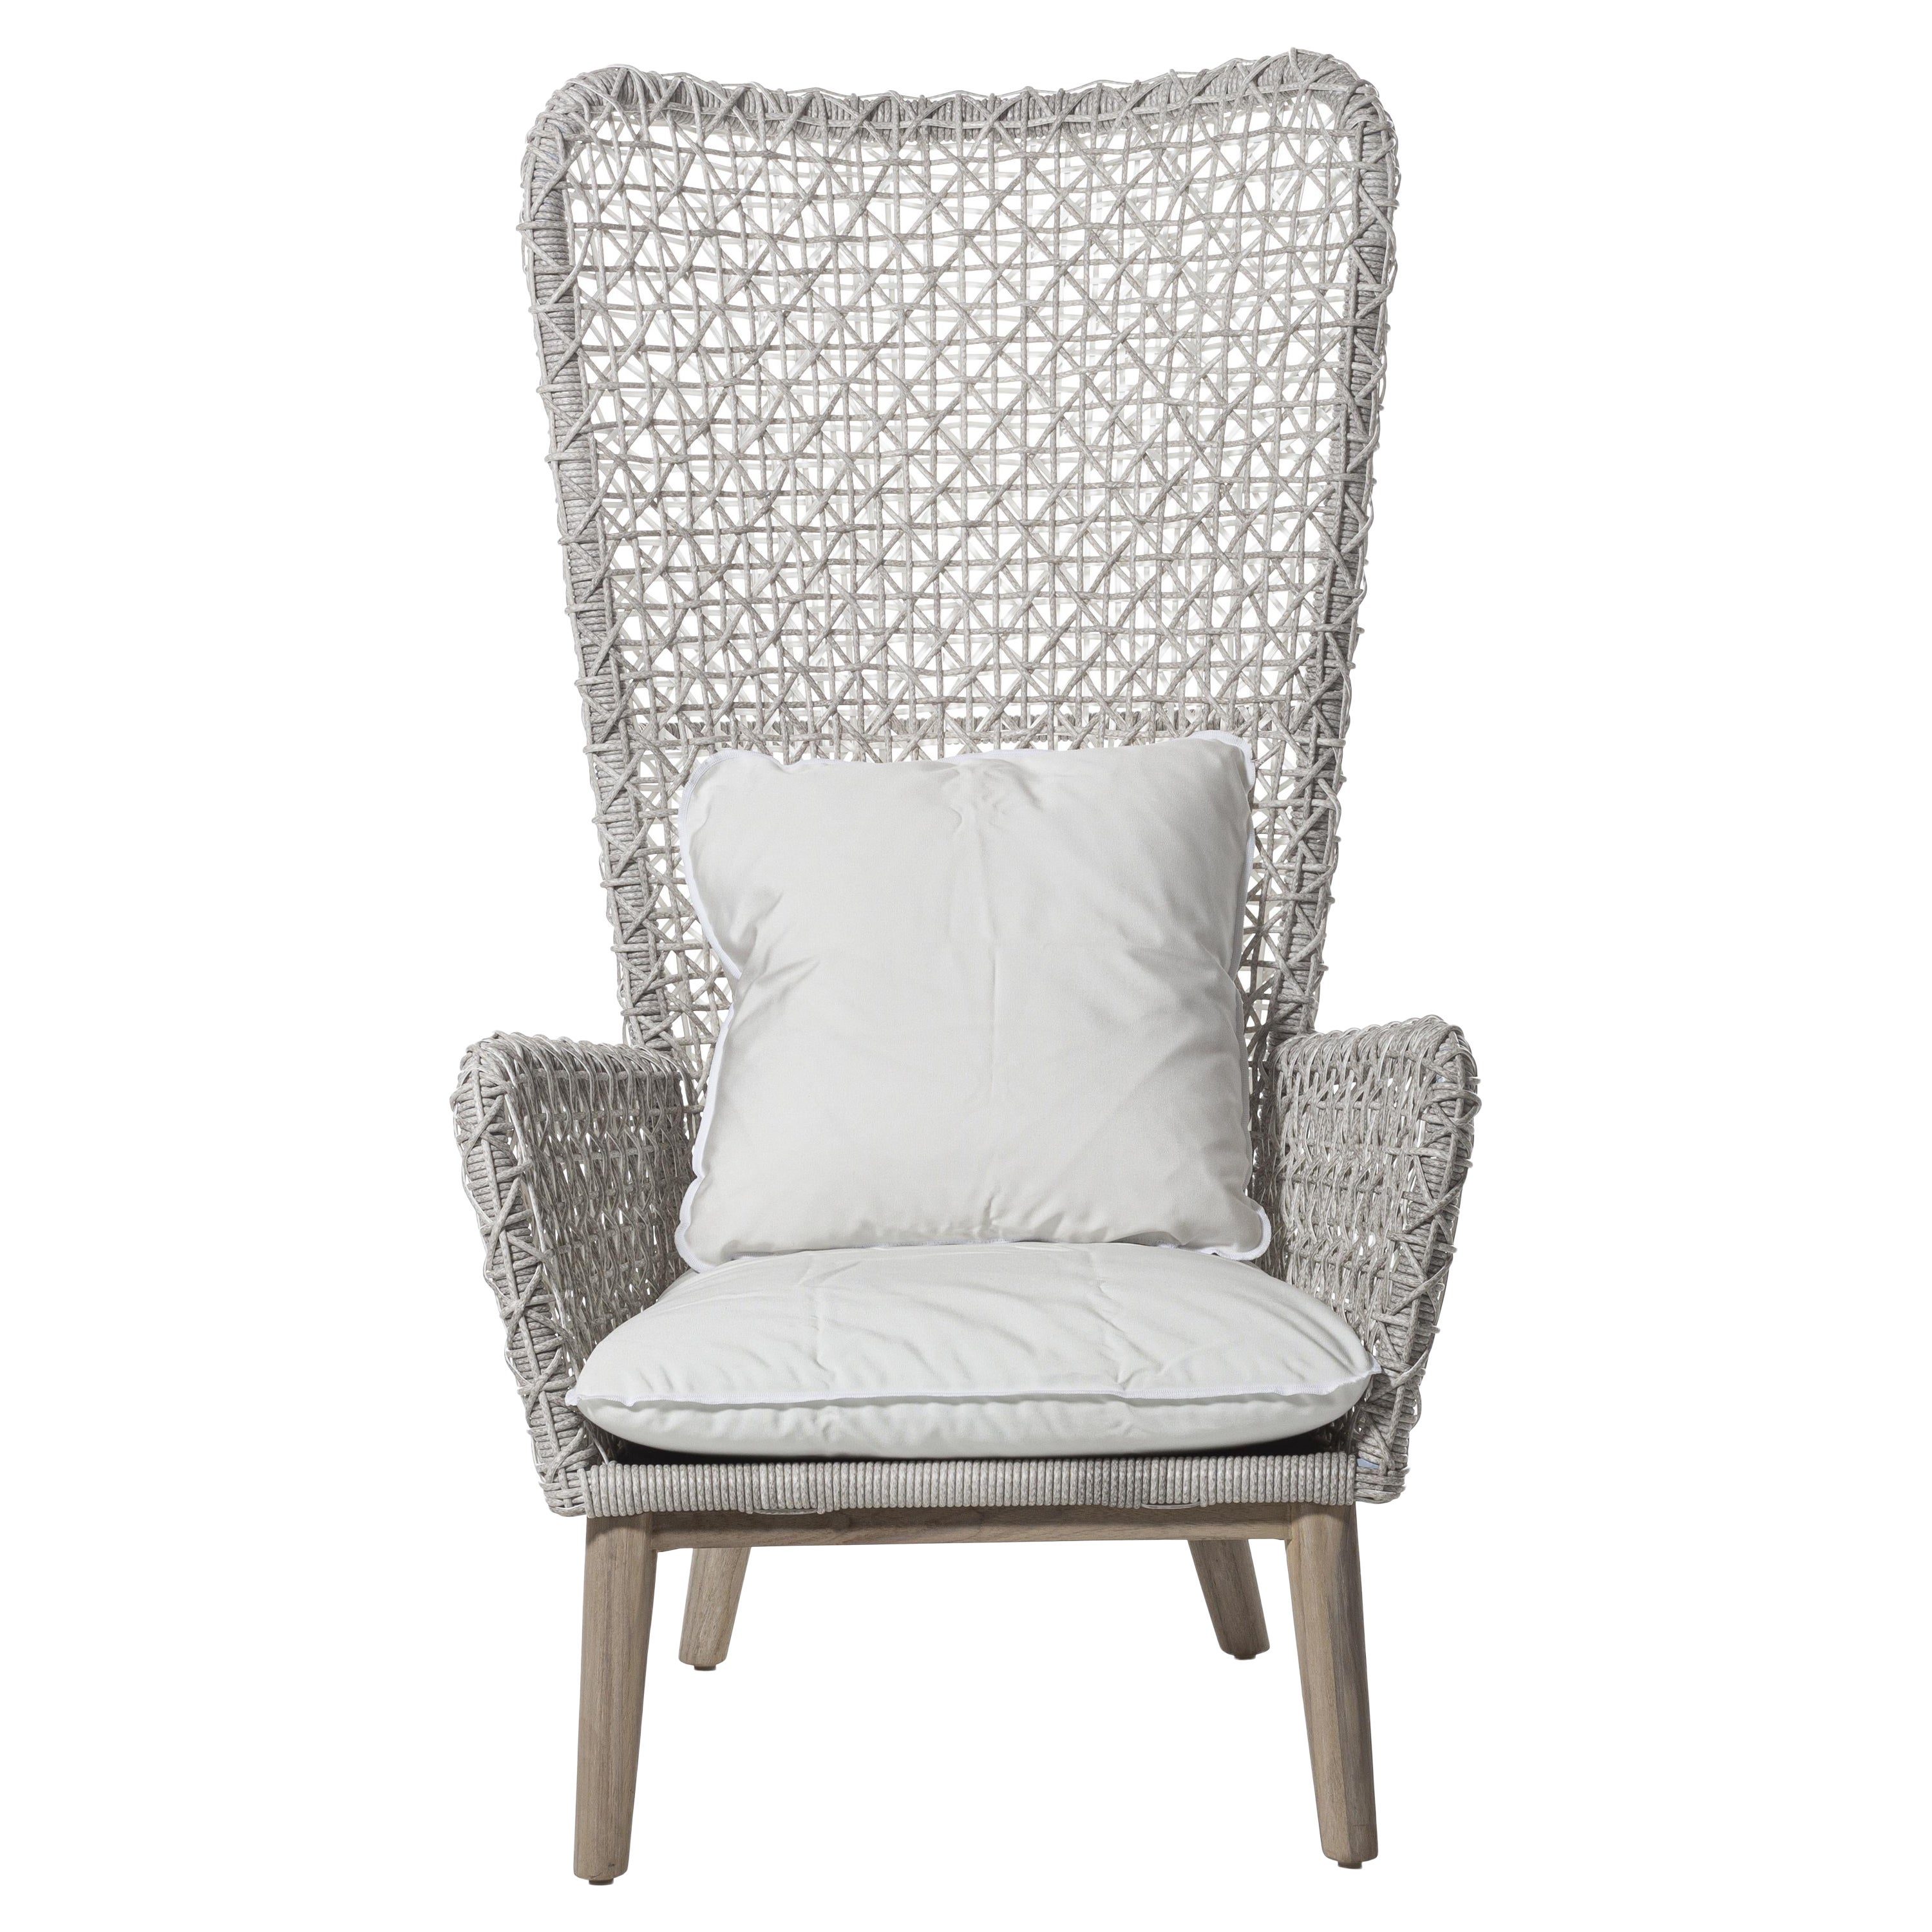 Gervasoni Panda Bergere Armchair in Aspen 03 Upholstery & White/Gray Resin Fiber For Sale